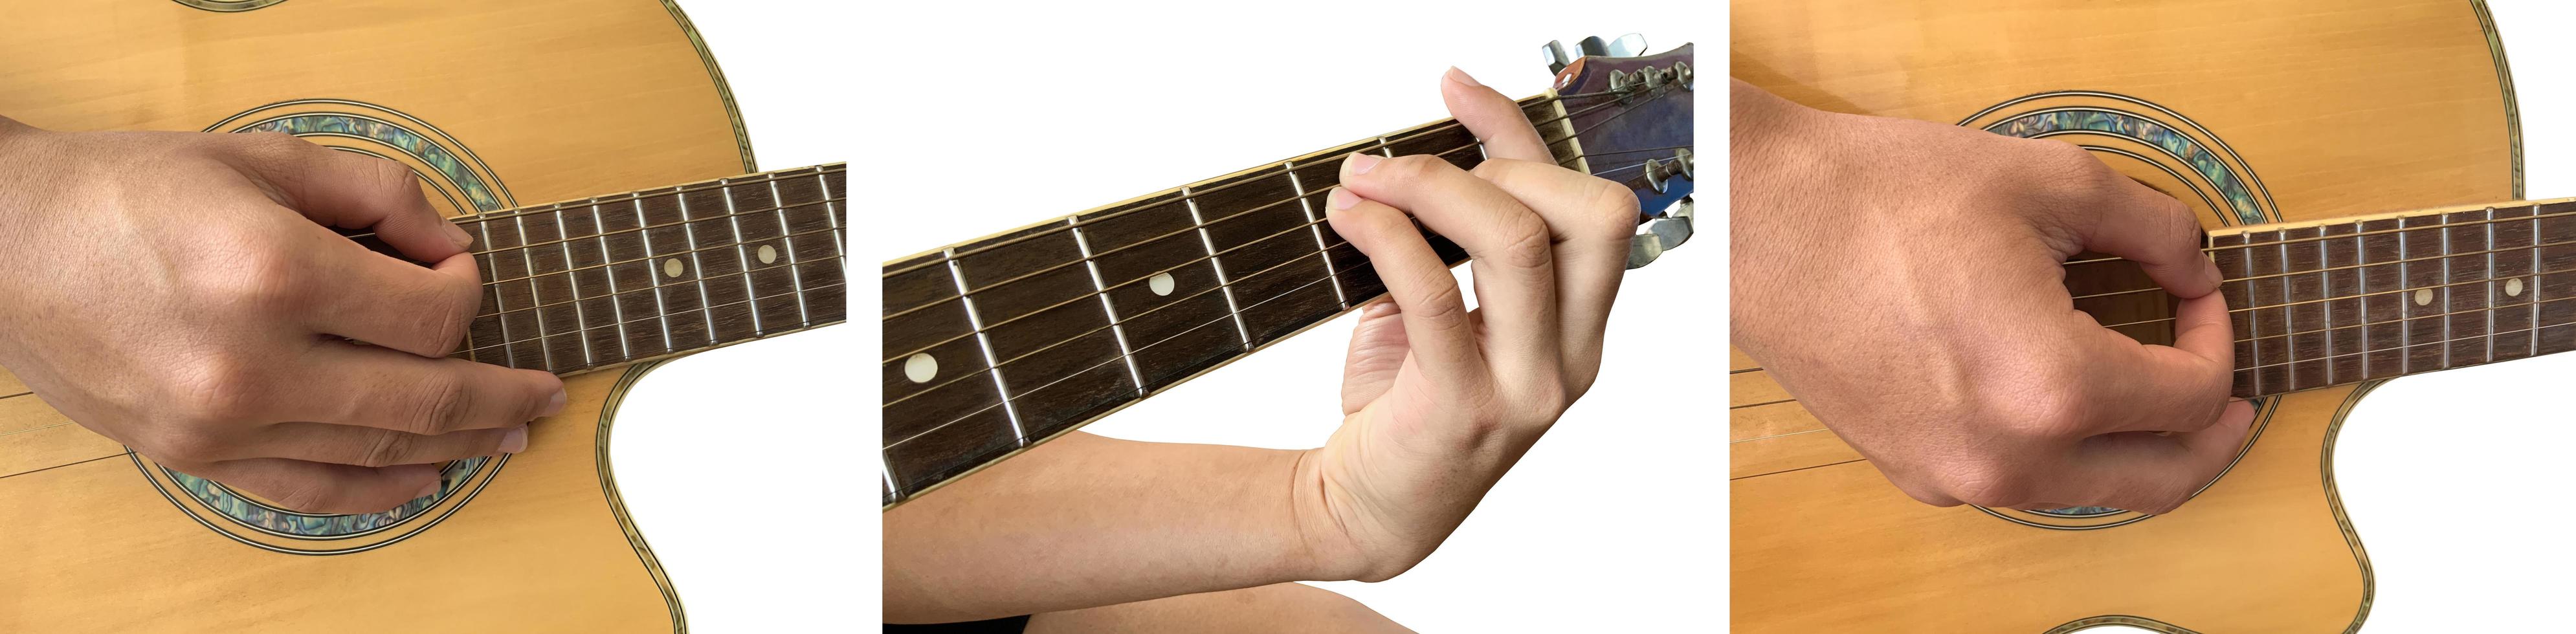 geïsoleerde vingers en hand die de gitaar speelt met uitknippaden. foto